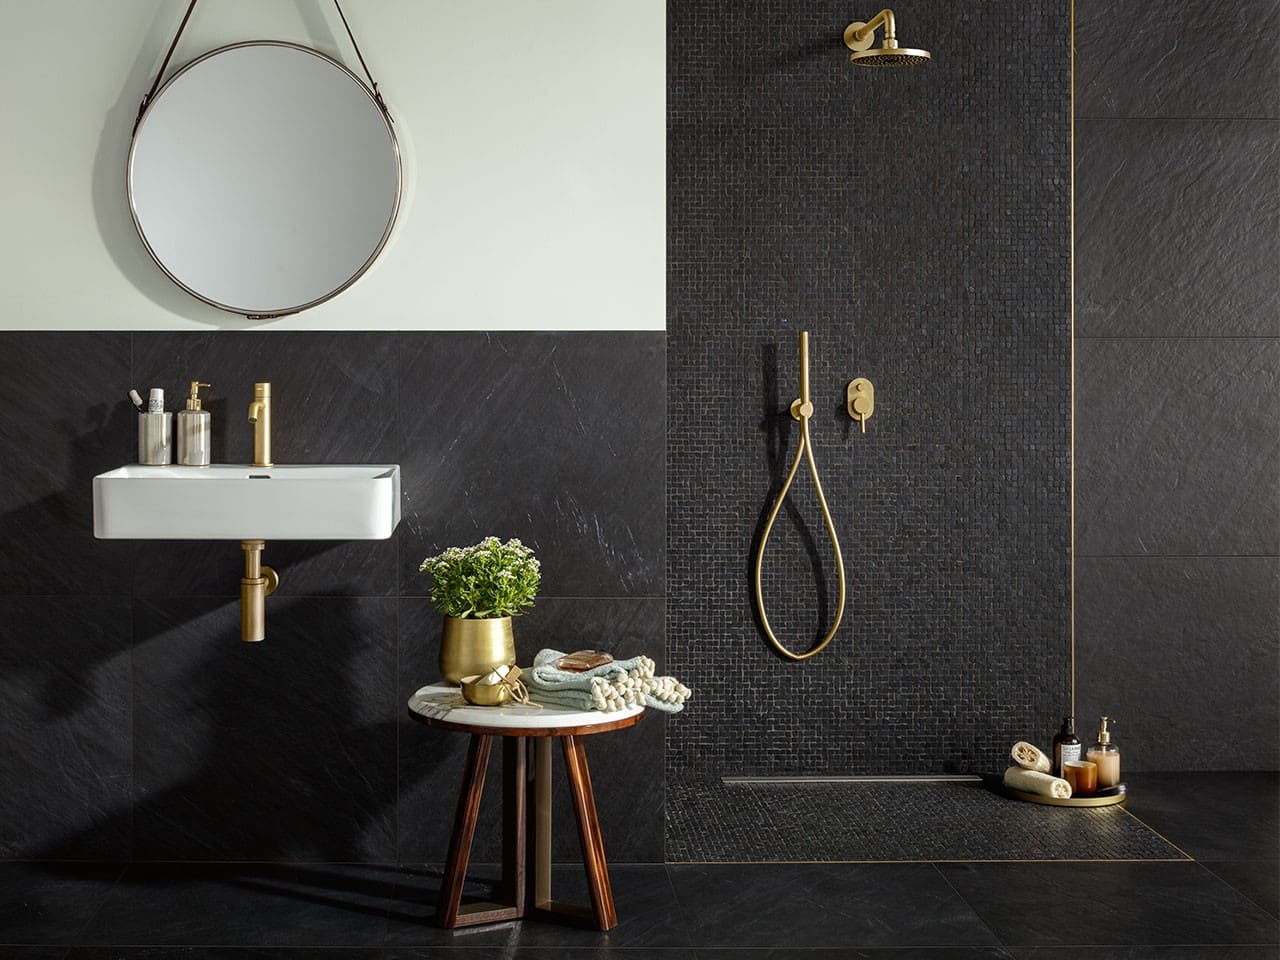 Tendenza rubinetti neri: 10 consigli per inserirli in bagno